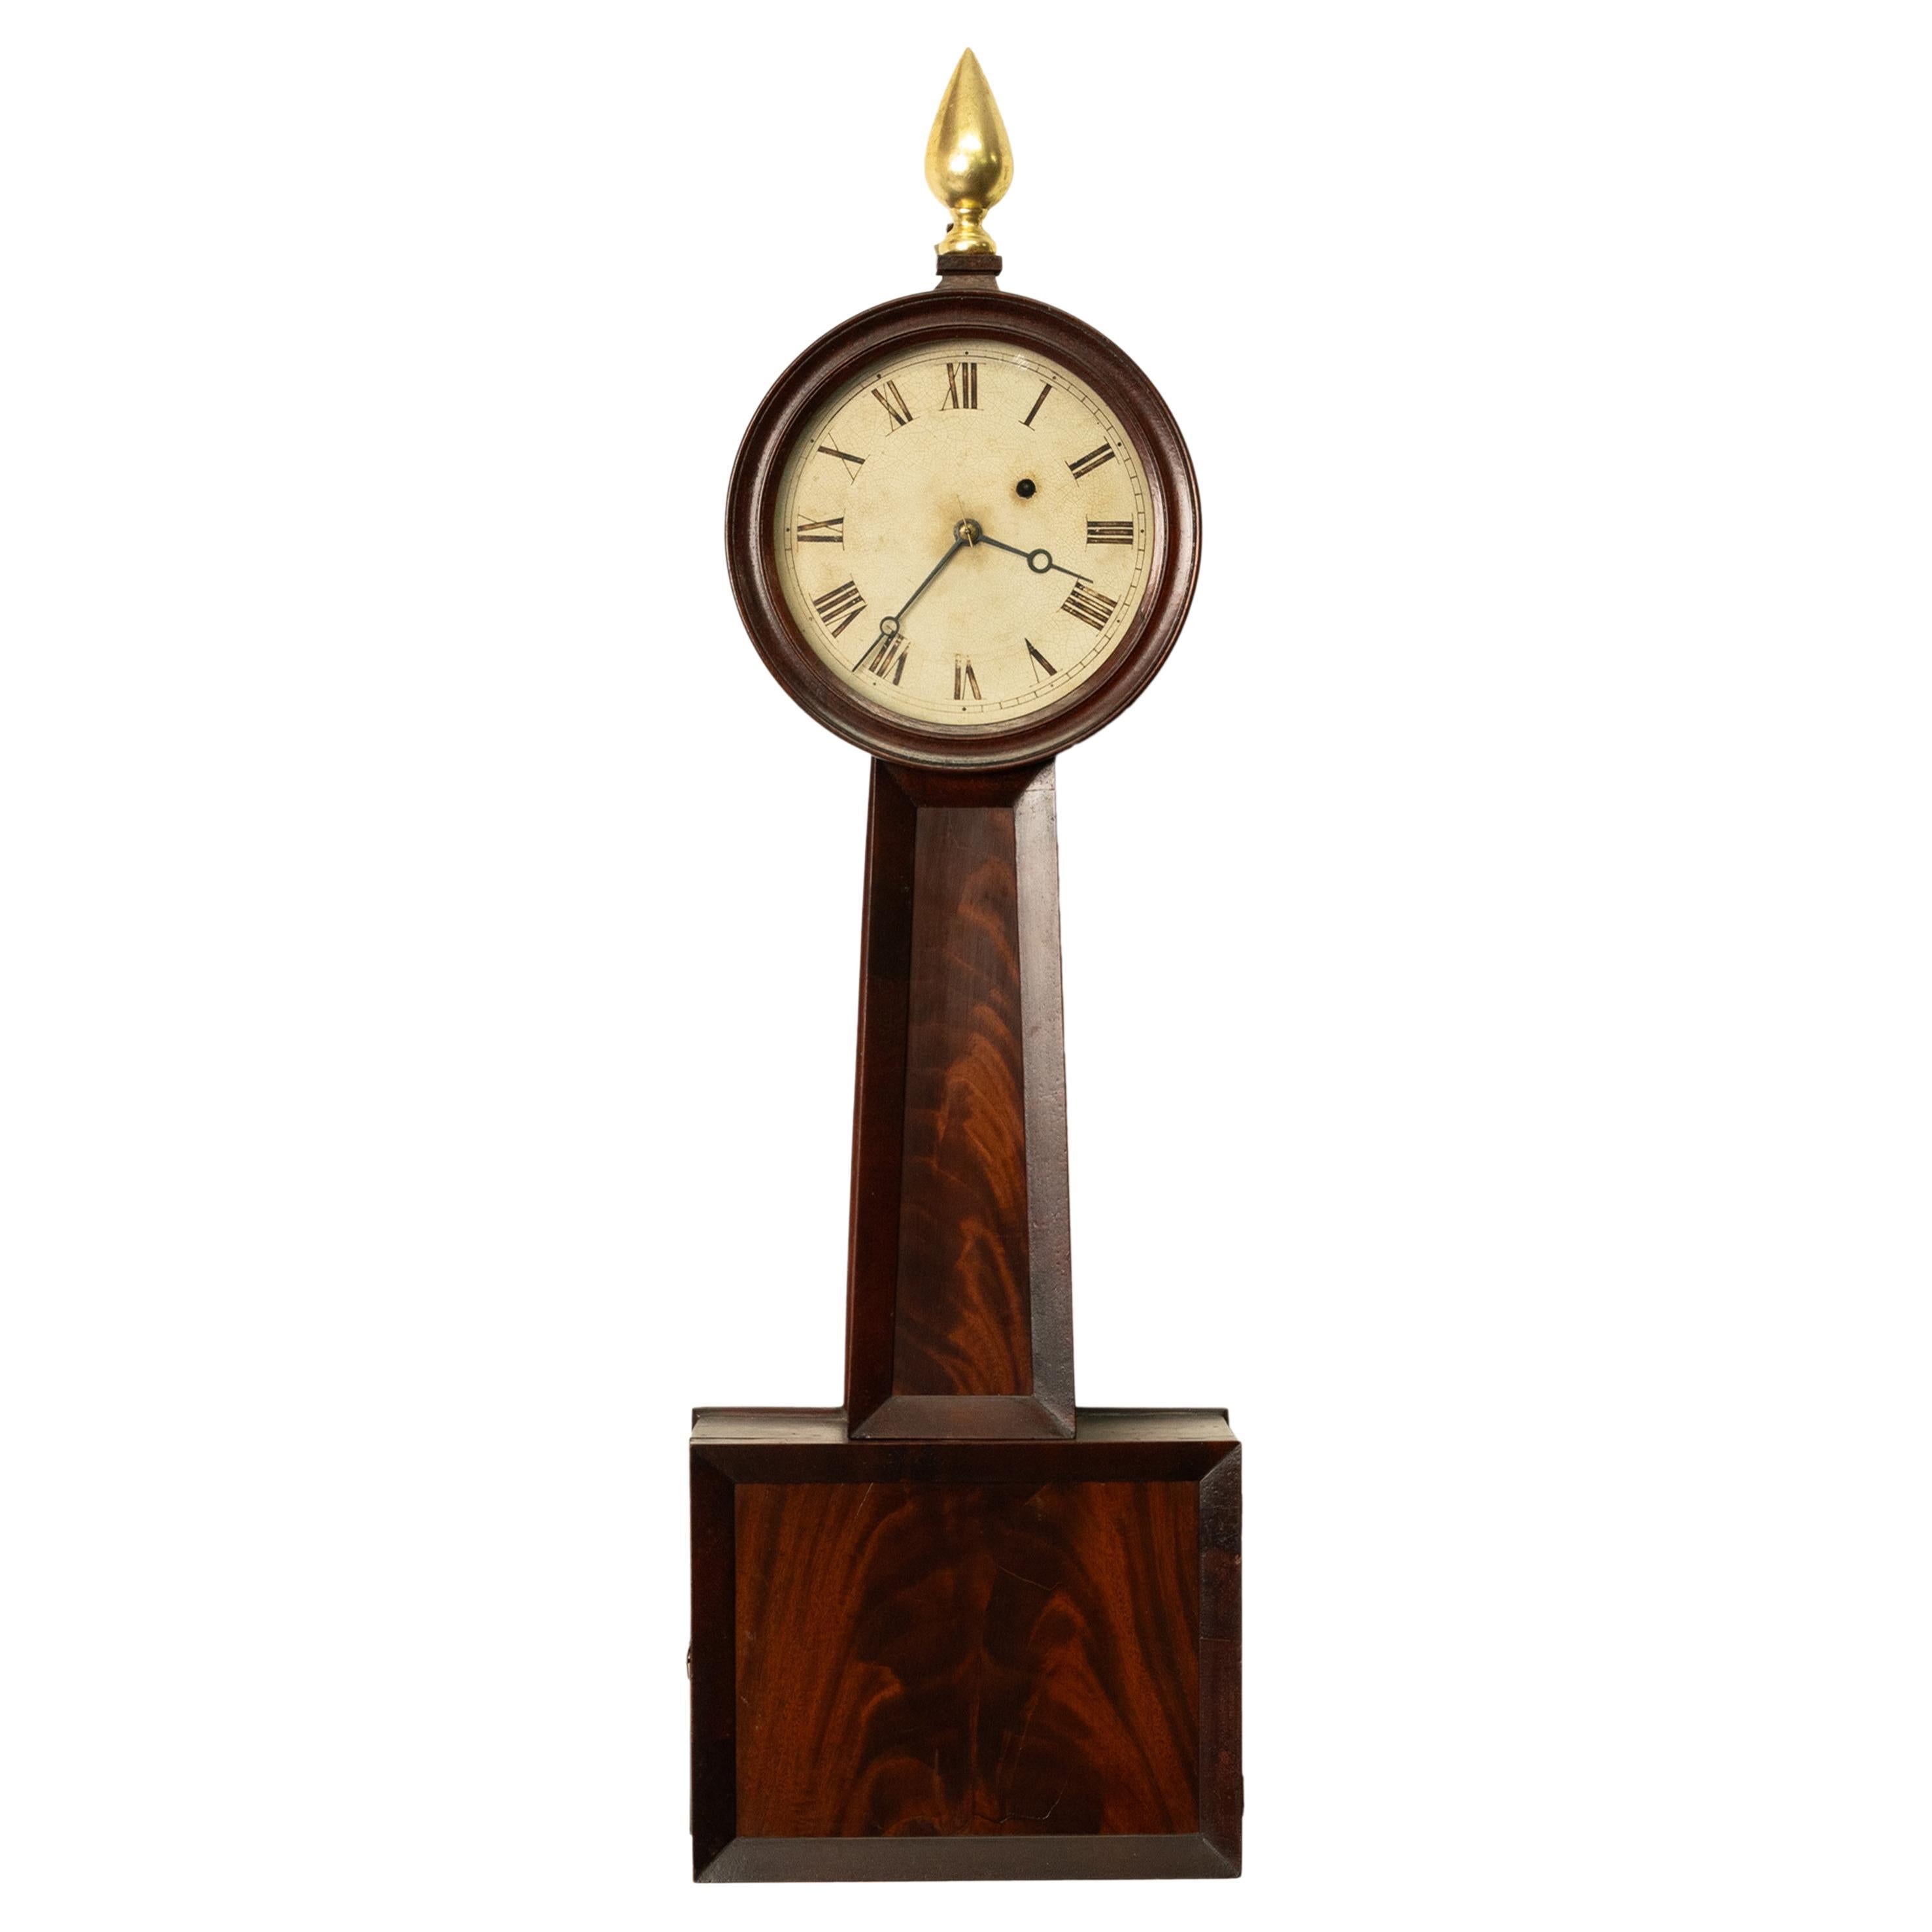 Rare antique American Simon Willard & Son Mahogany Patent Timepiece or 